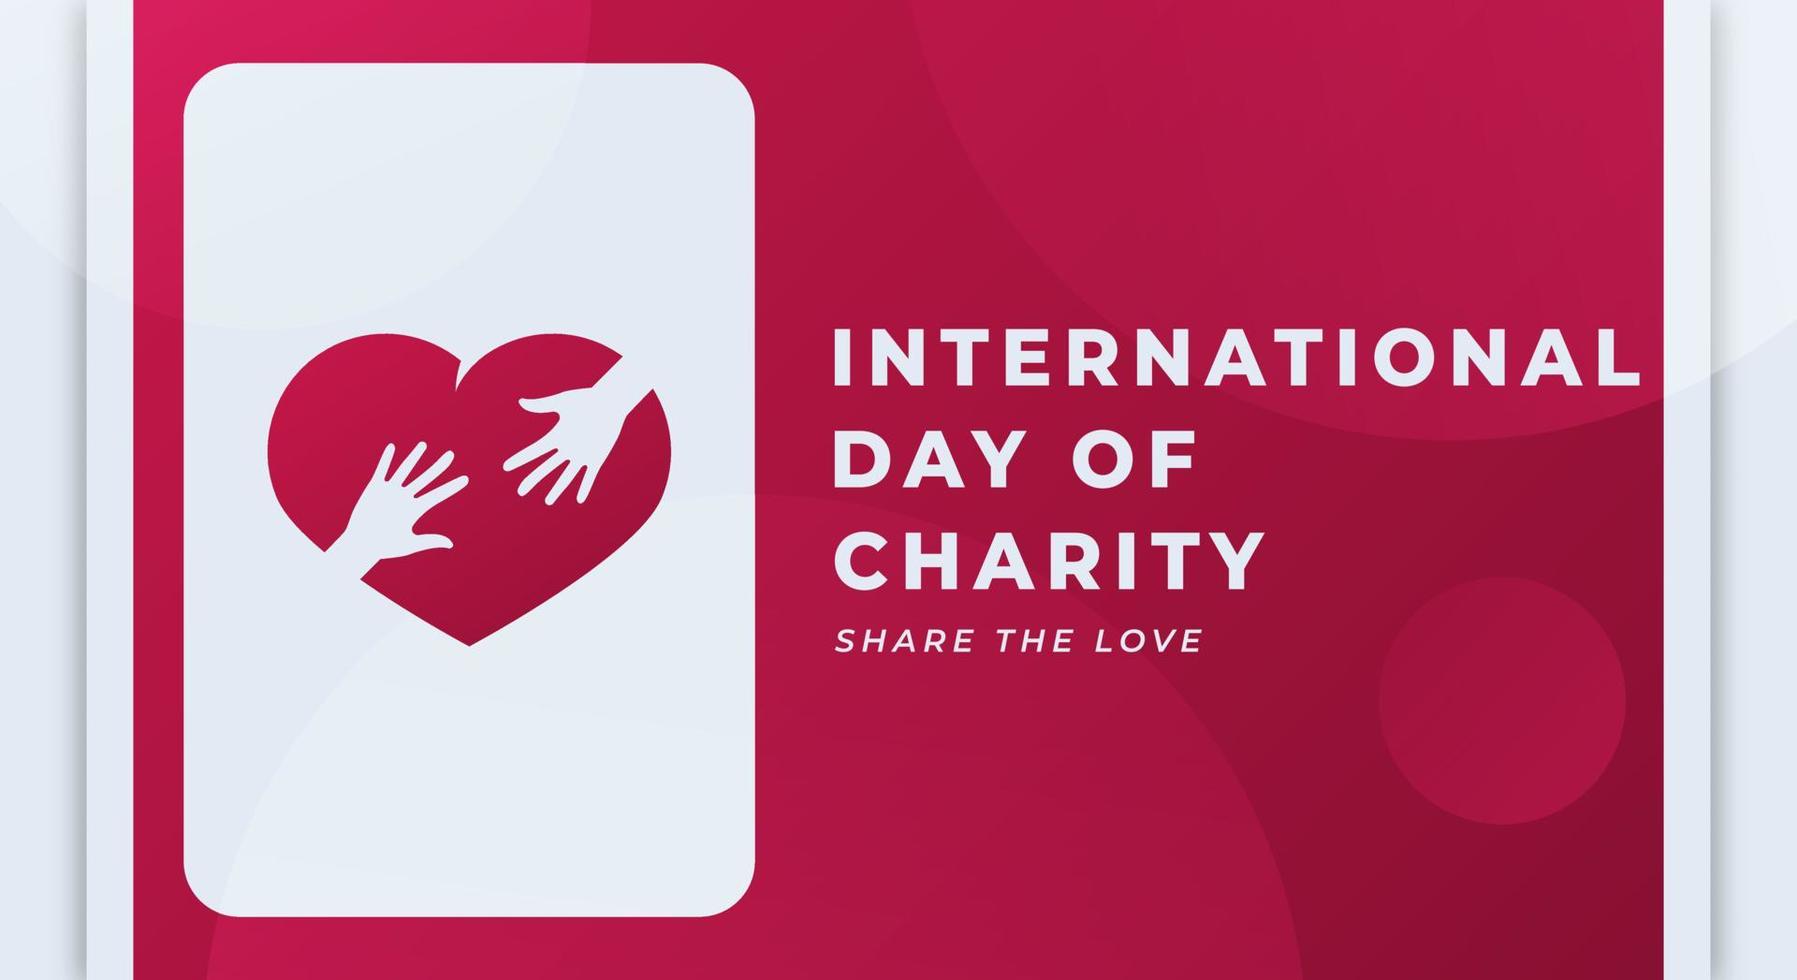 contento internacional día de caridad celebracion vector diseño ilustración para fondo, póster, bandera, publicidad, saludo tarjeta